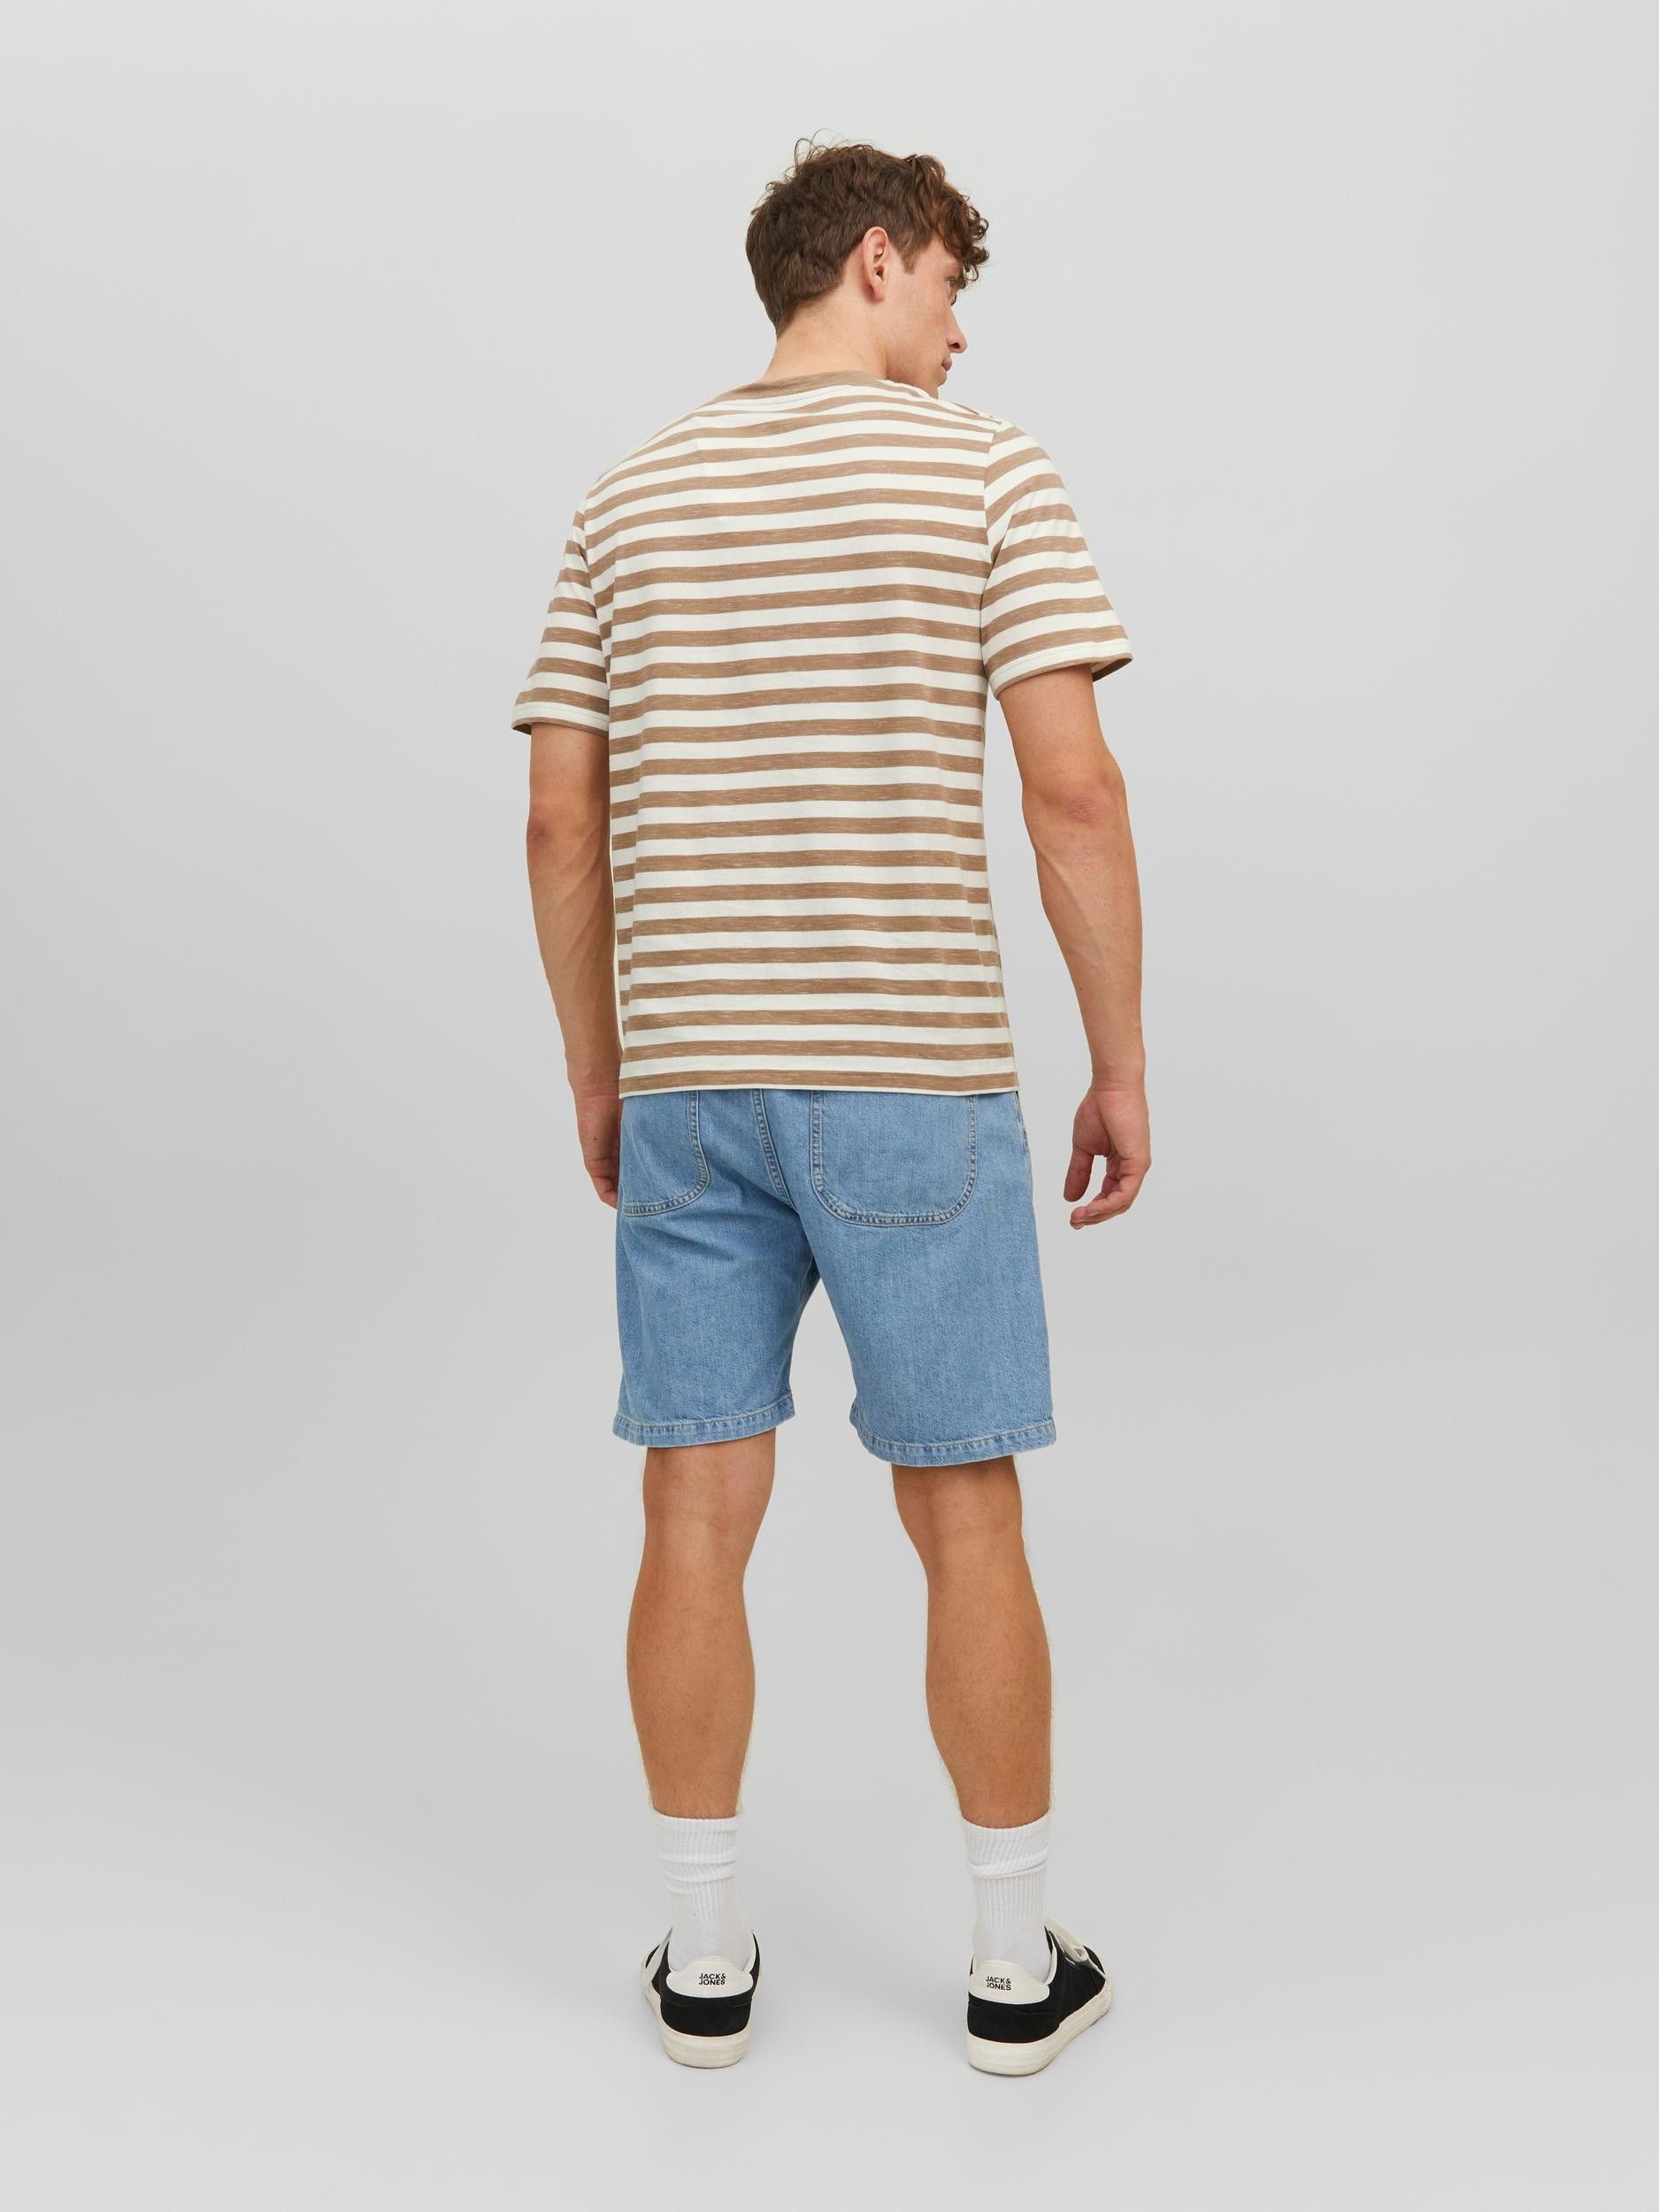 Jack & Jones - Striped T-Shirt, Beige, large image number 4